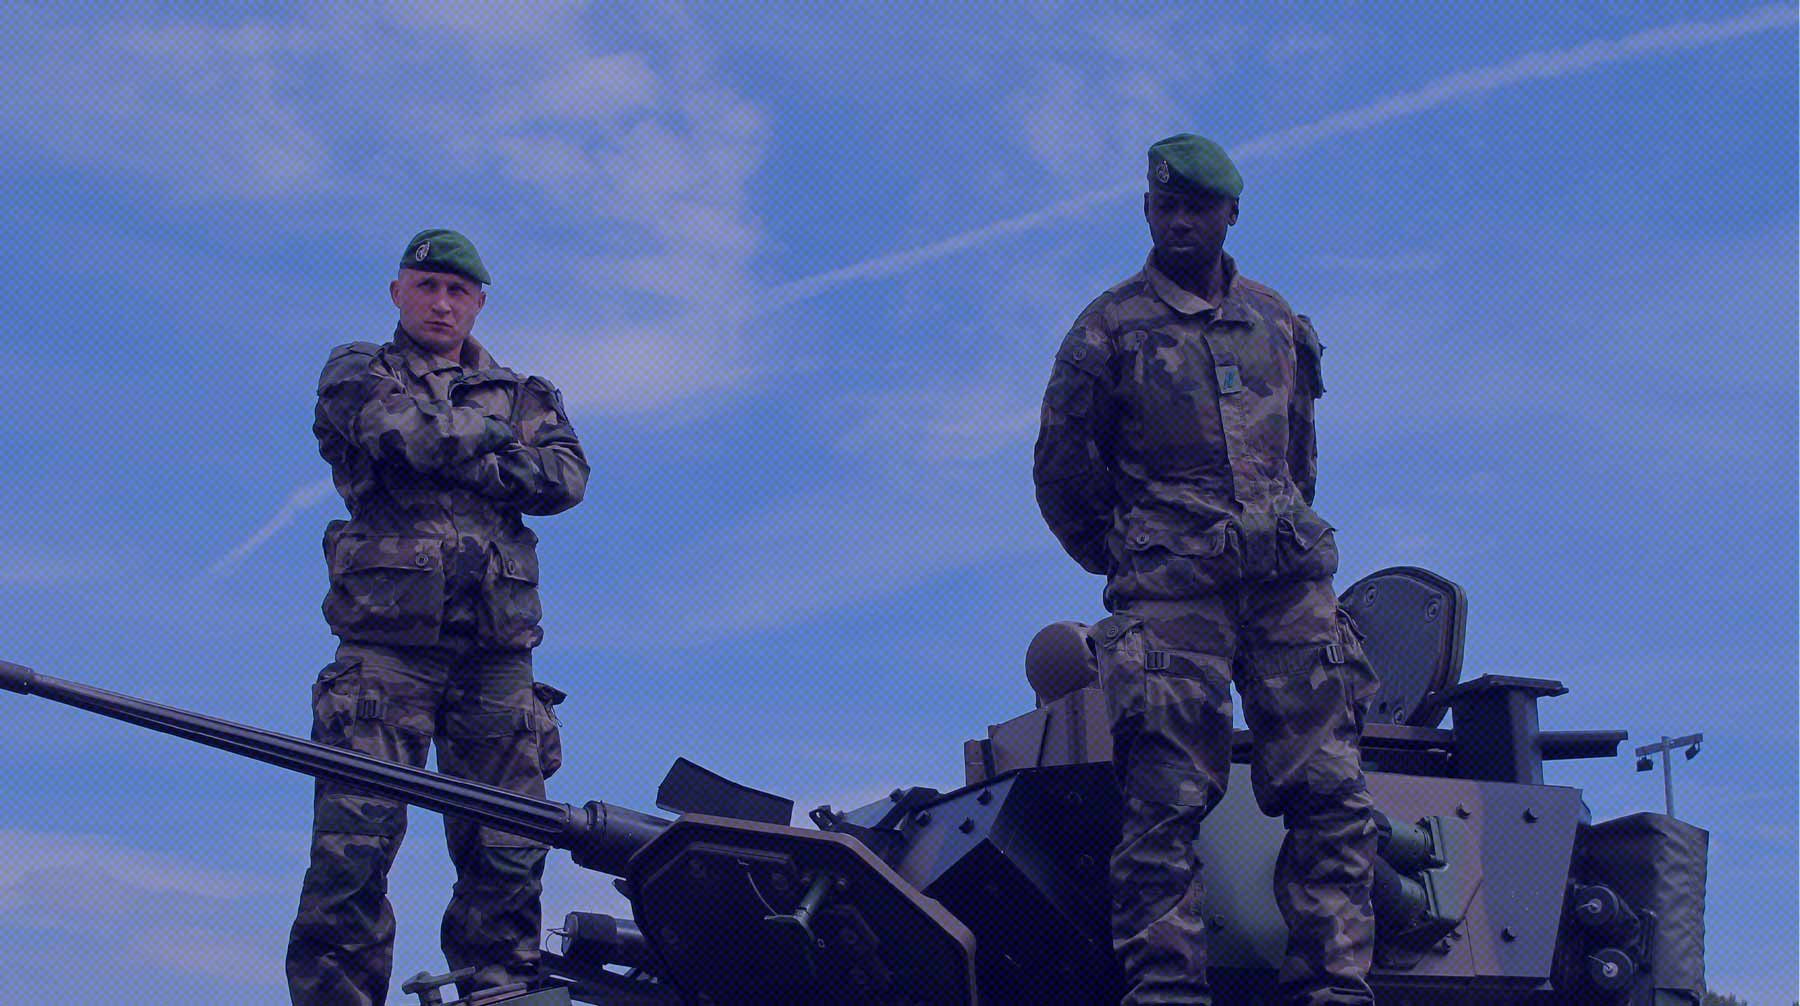 Dailystorm - Военкор Коц назвал слухами появление в зоне СВО солдат французского Иностранного легиона